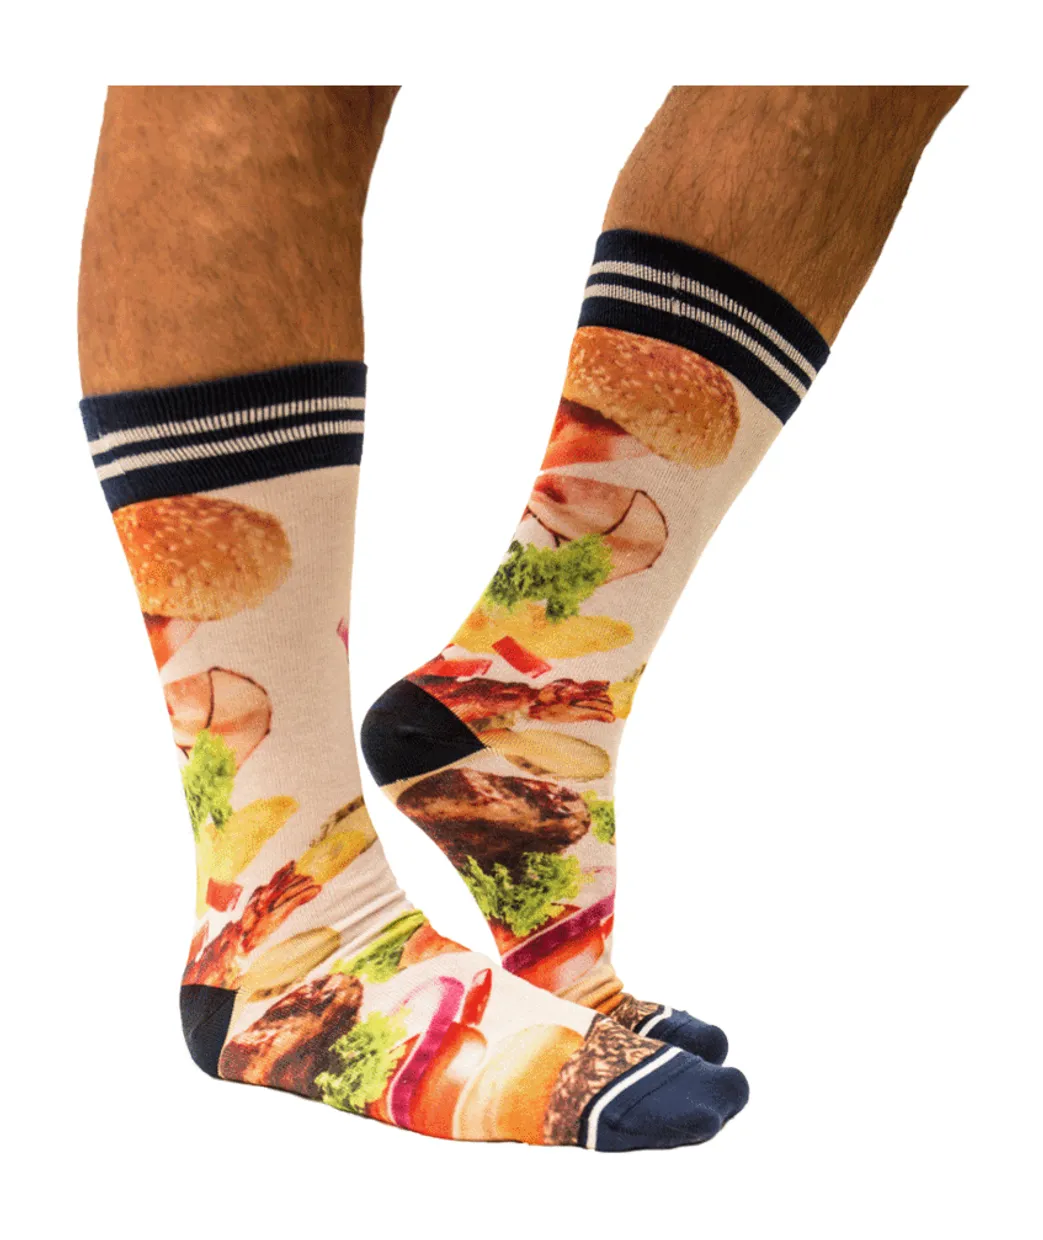 Sock My Hamburger